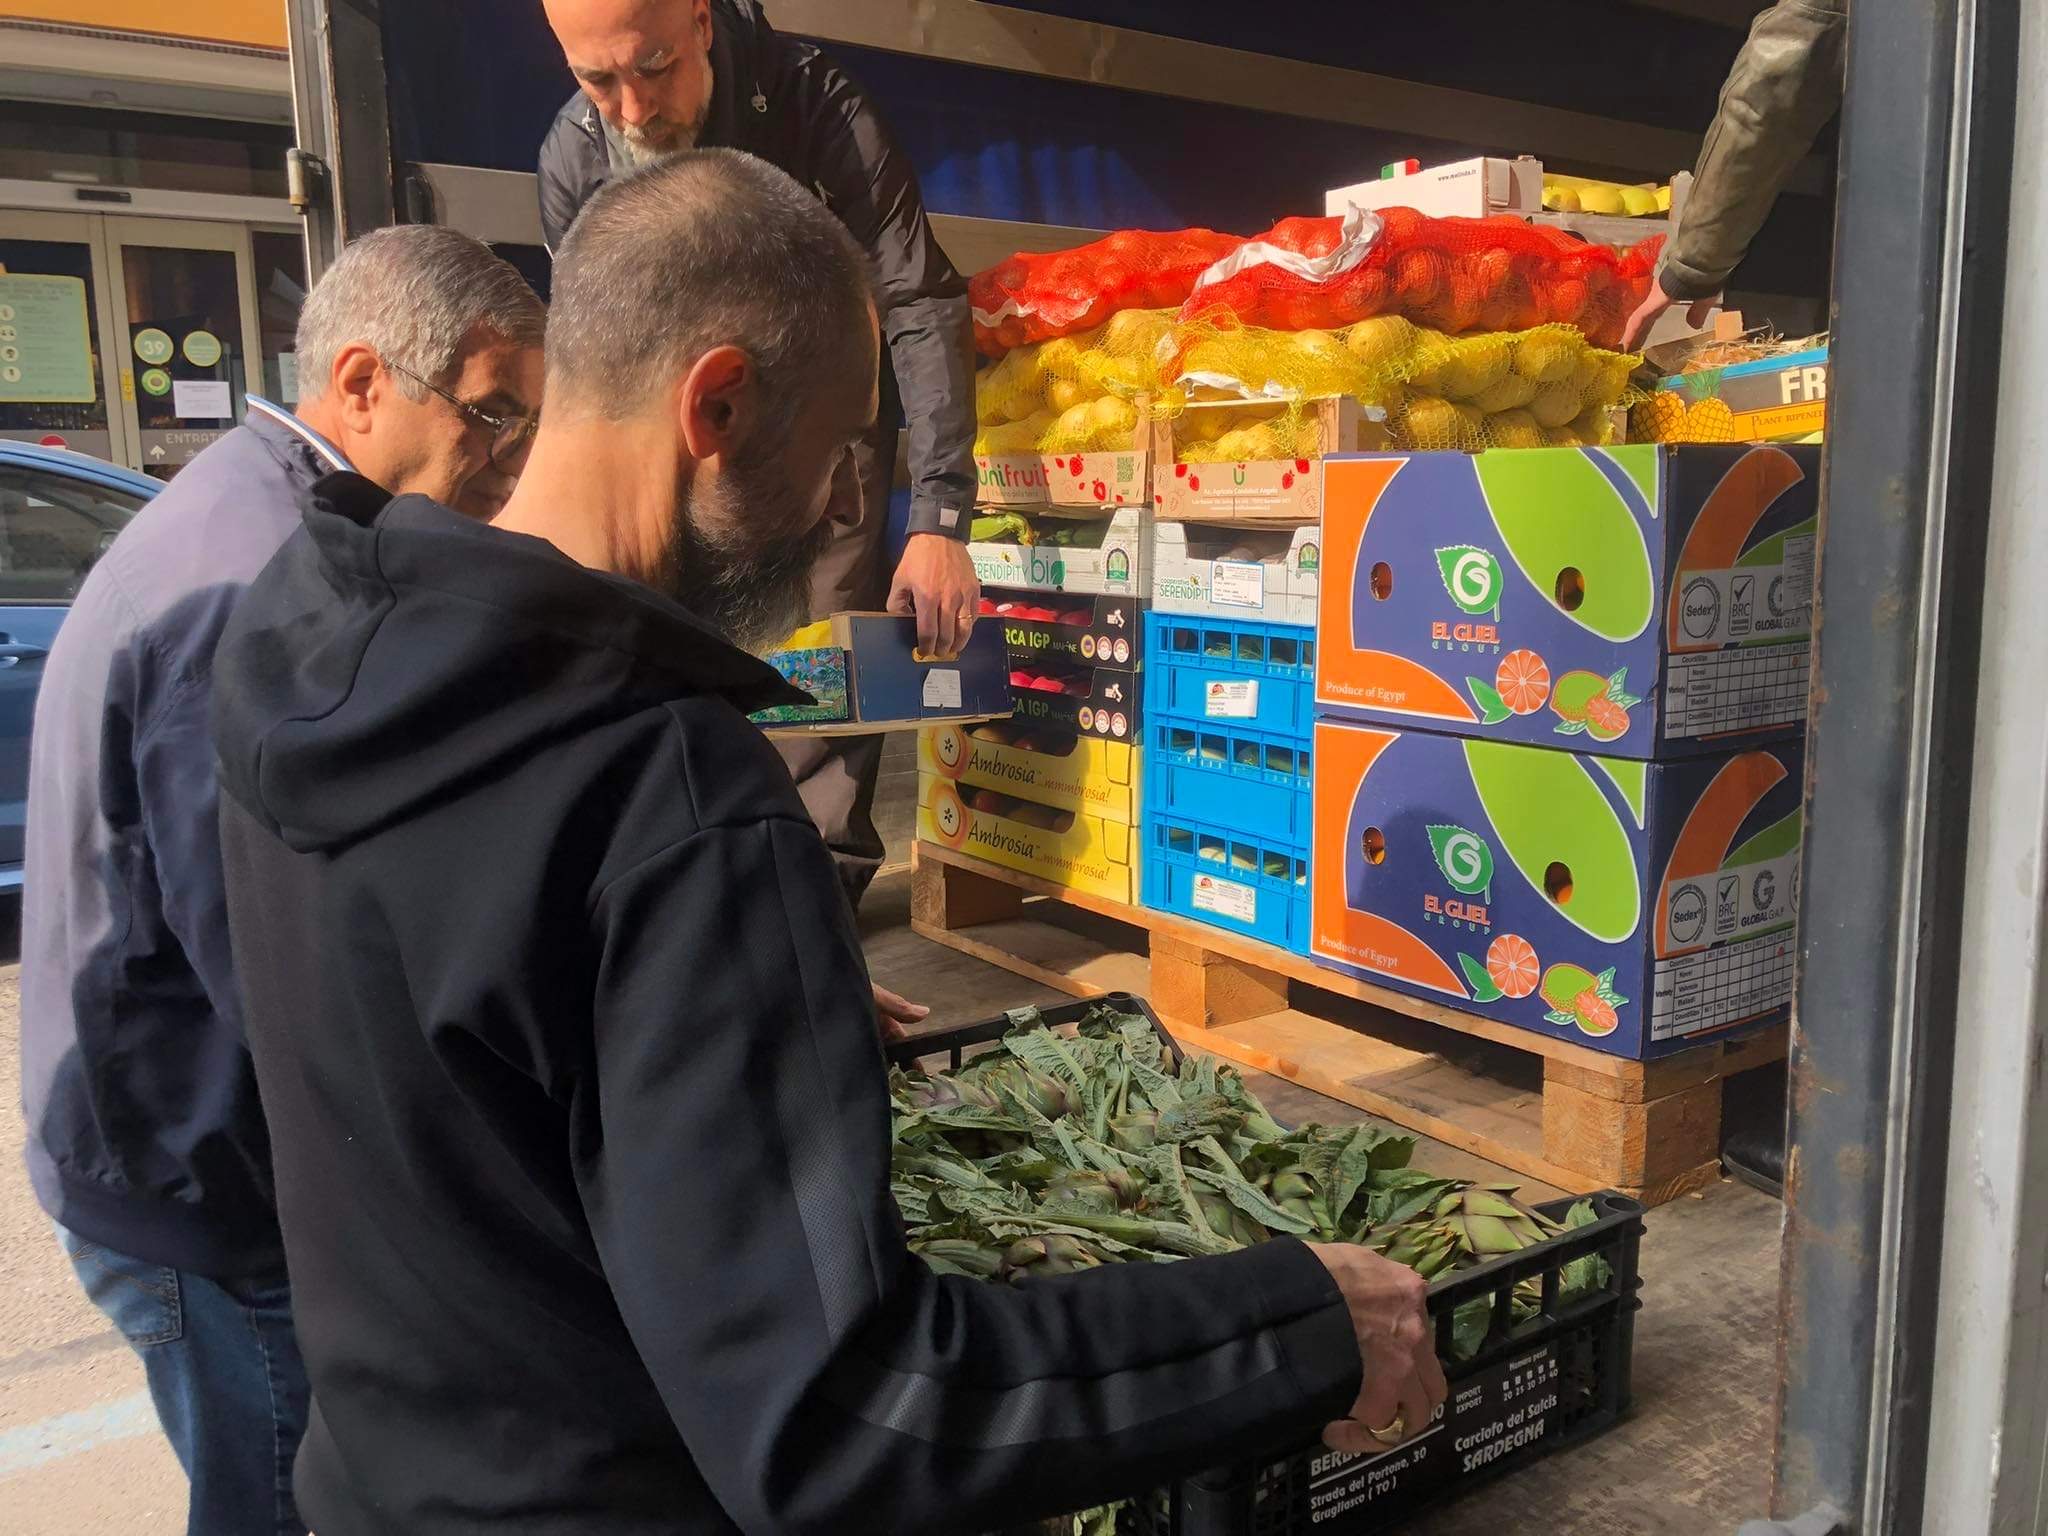 Rincari alimentari: Torino Tricolore dona frutta e verdura ad istituto per l’infanzia